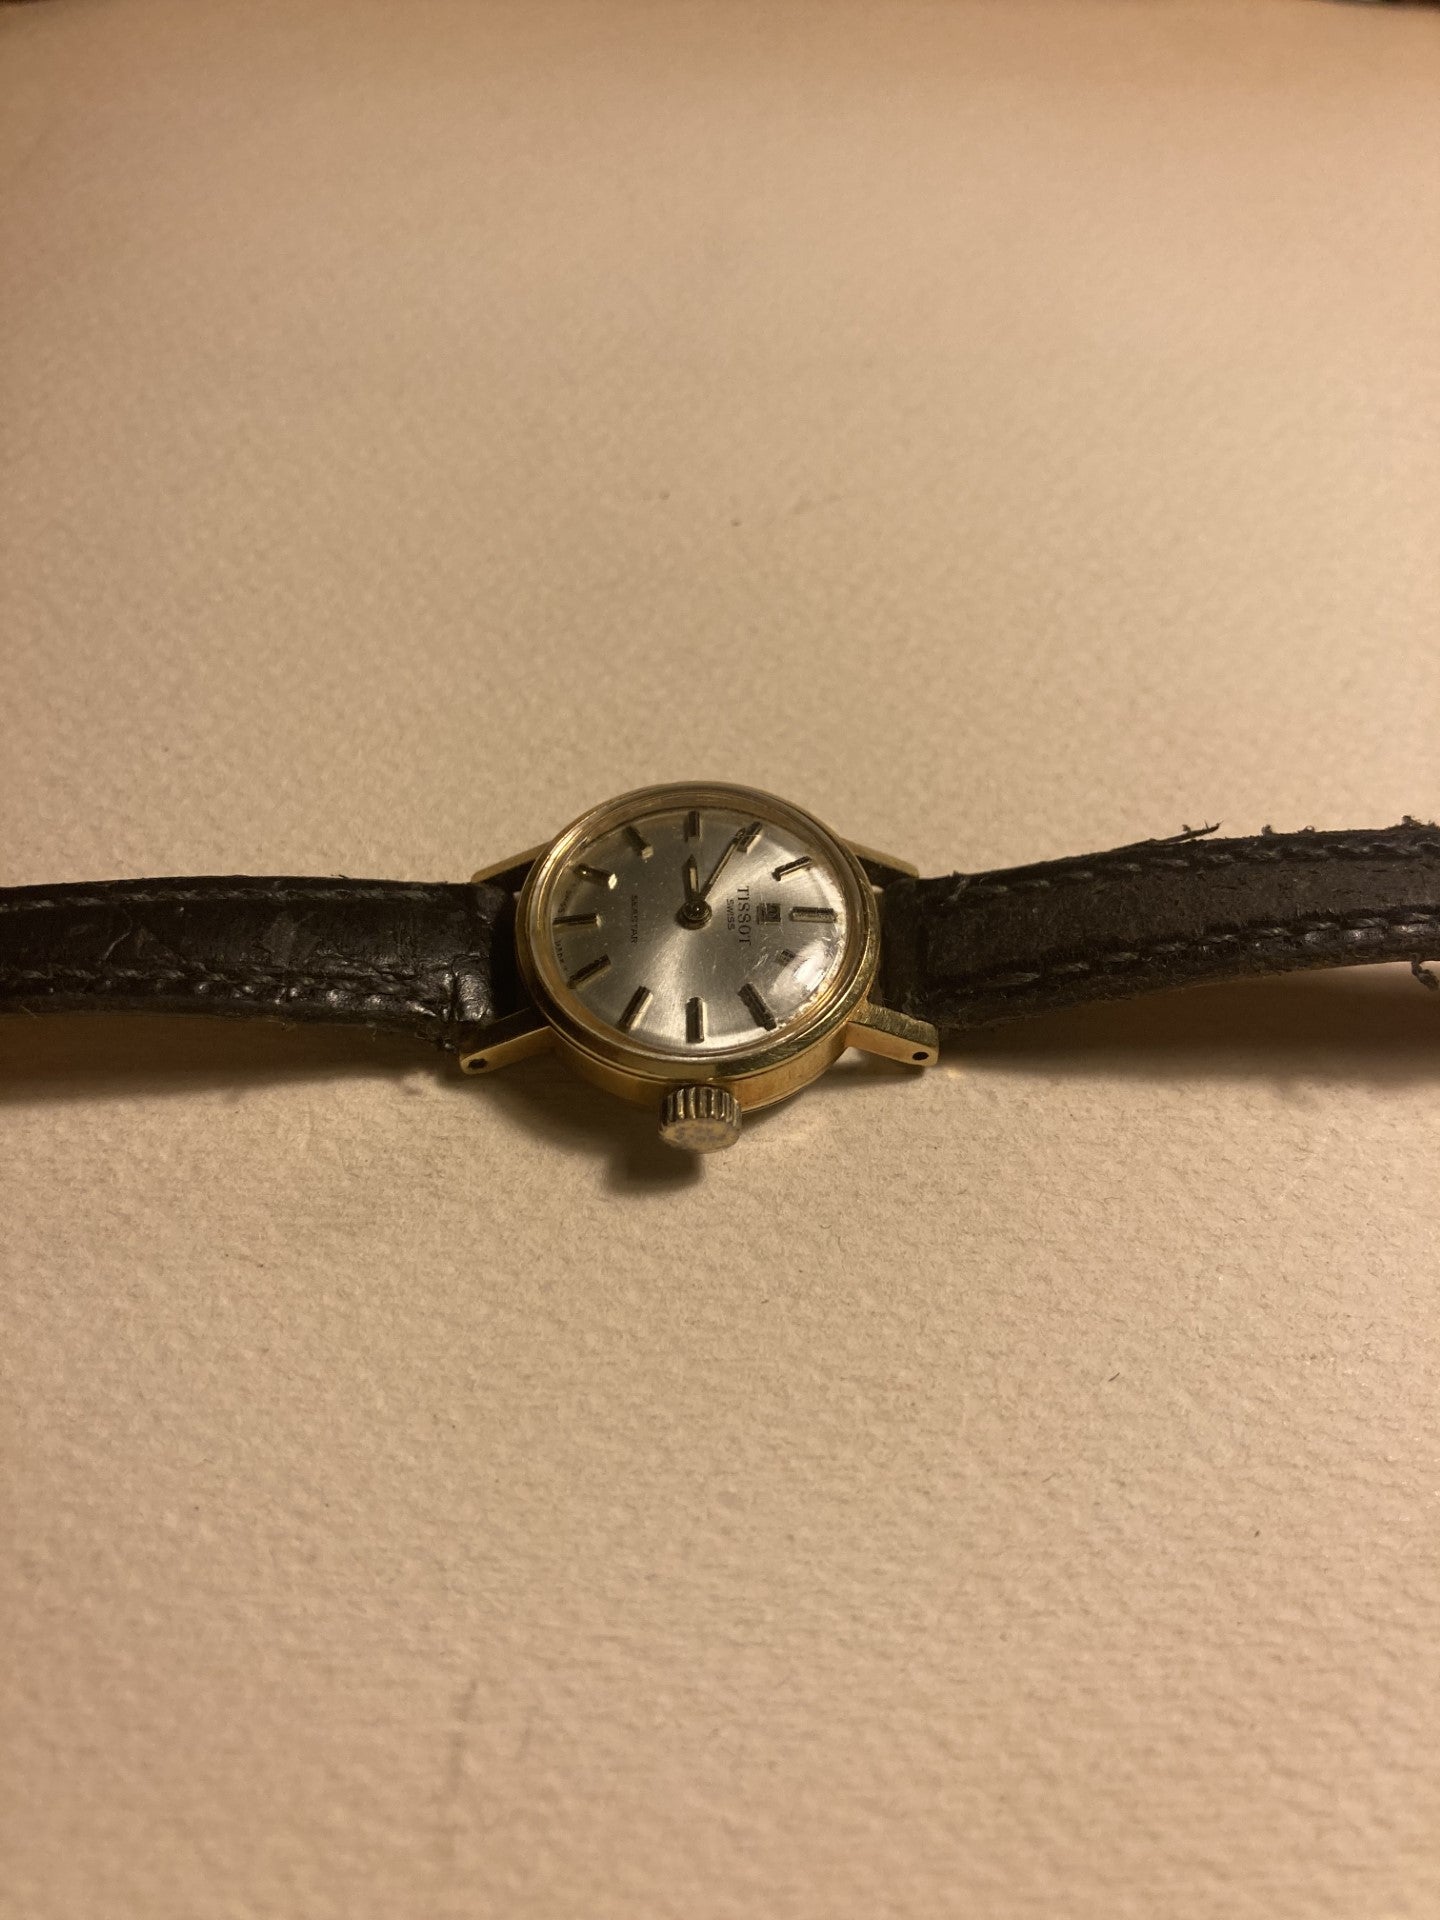 Tissot Seastar 女性用手巻き式時計、正常に動作します - no. 01057